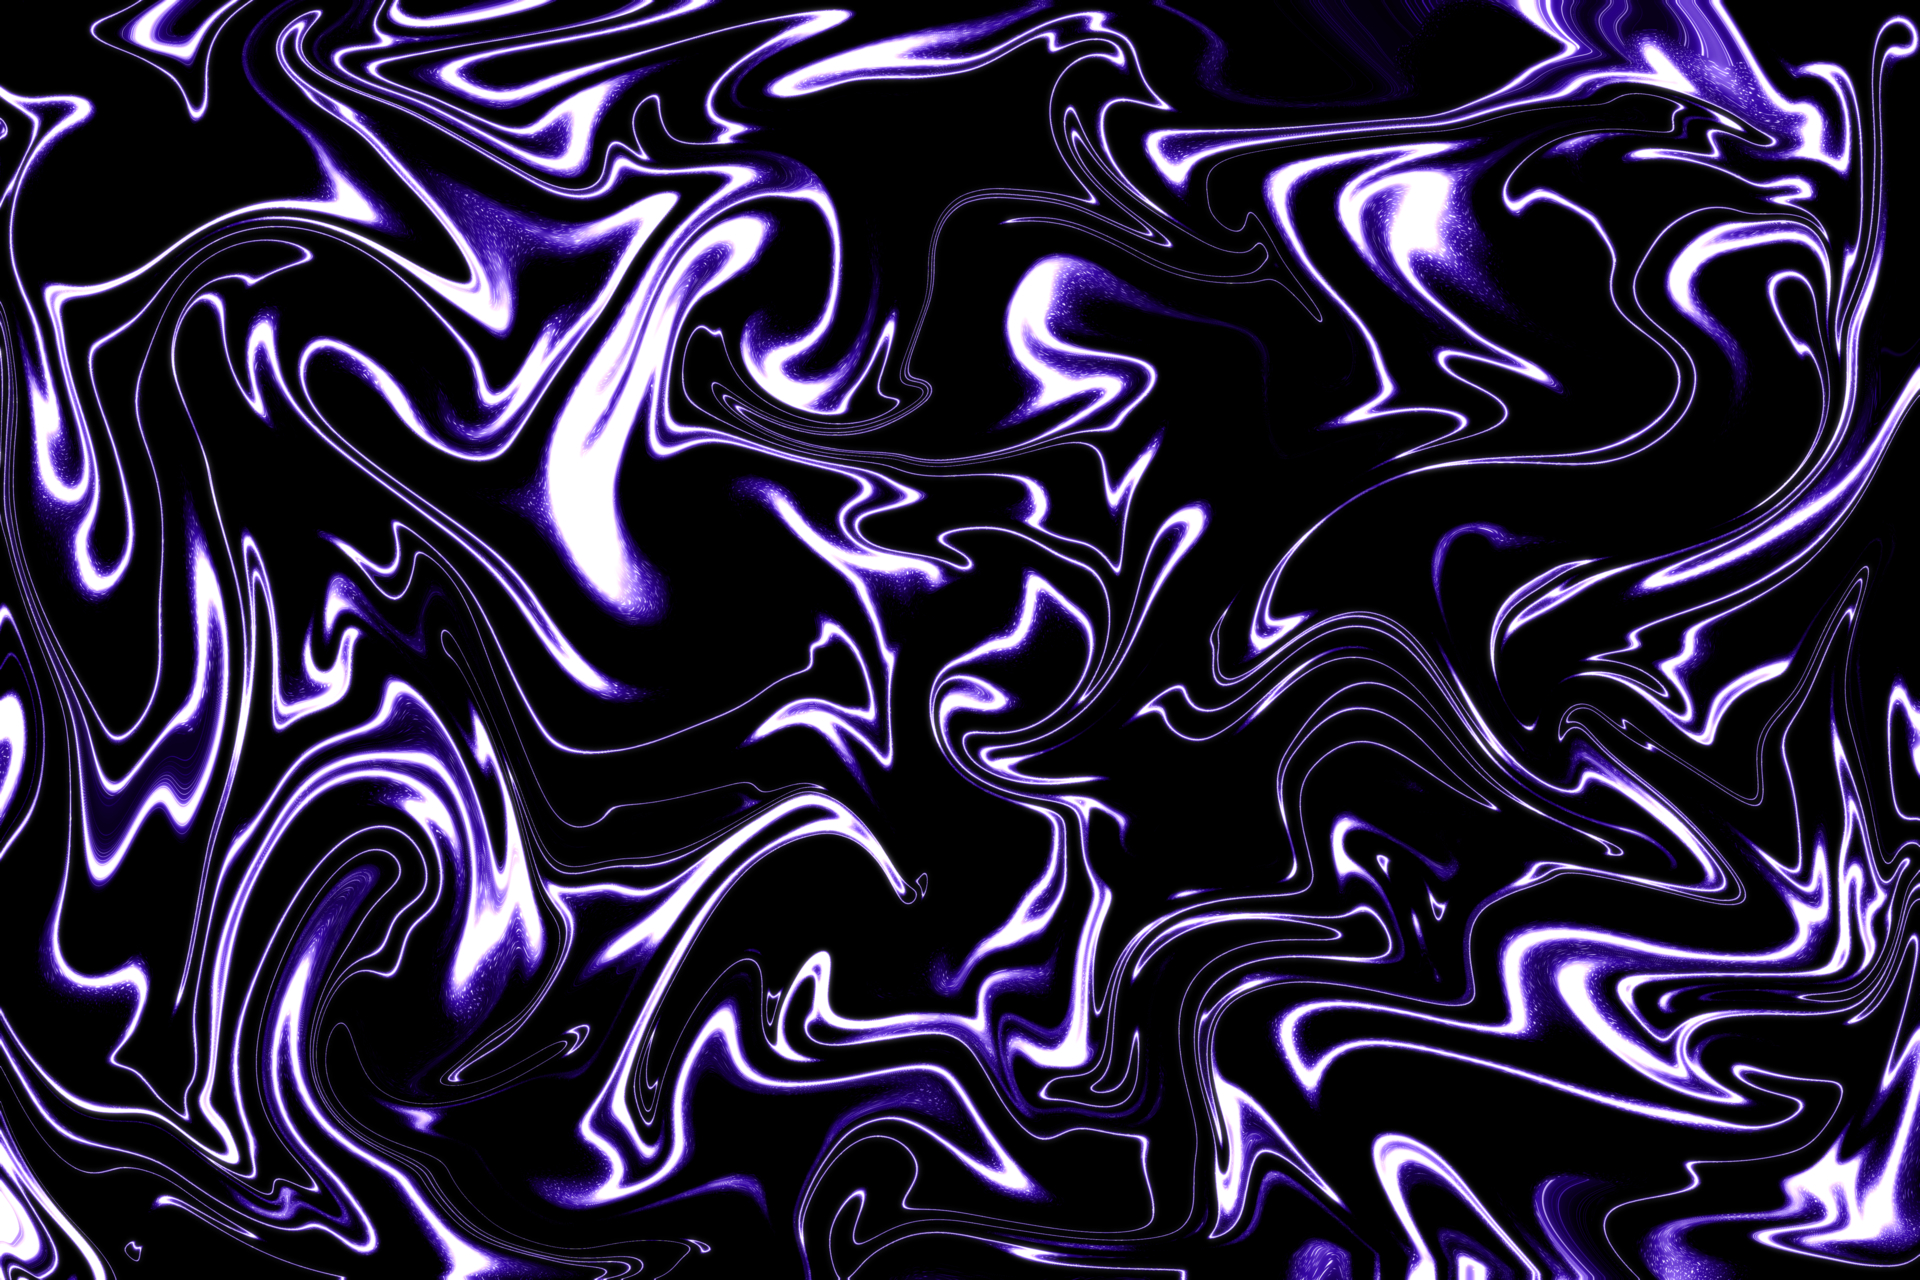 Noise_Dark_Purple_Fluid, width 1920, jpg